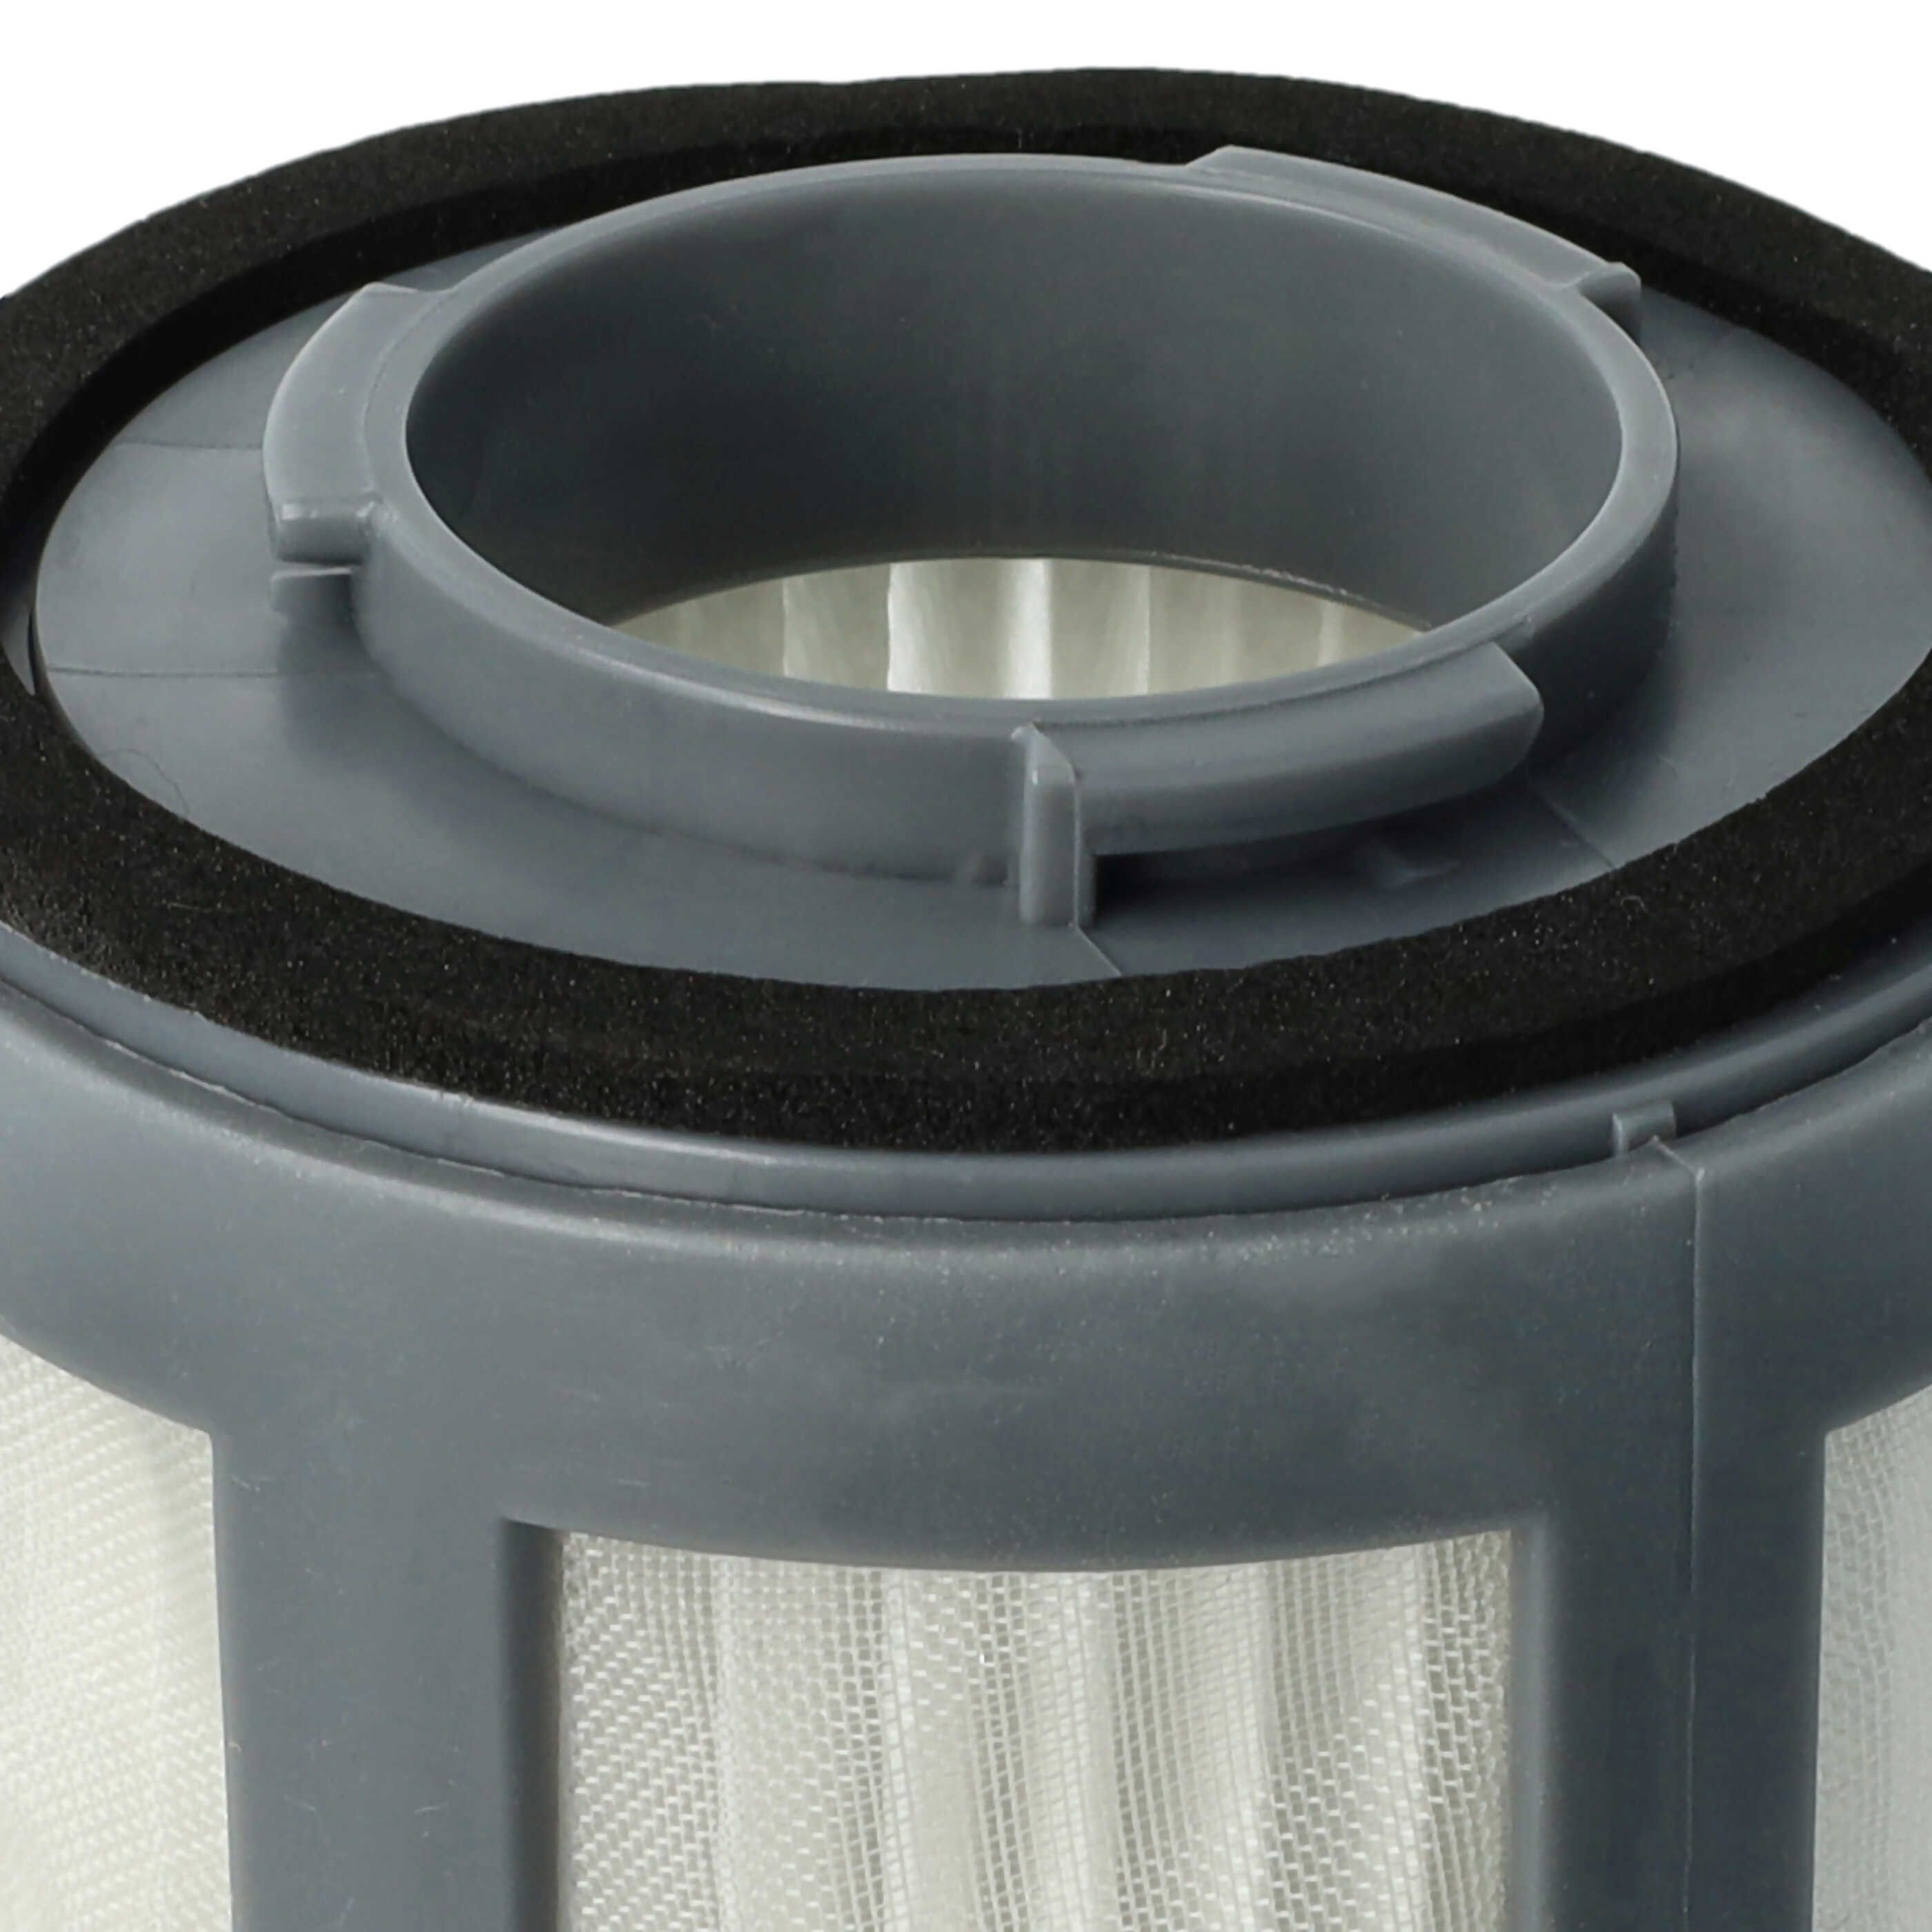 Filtro para aspiradora BS 9012 CB Eco Cyclon Bluesky, etc. - elemento filtrante (filtro nailon + filtro HEPA) 